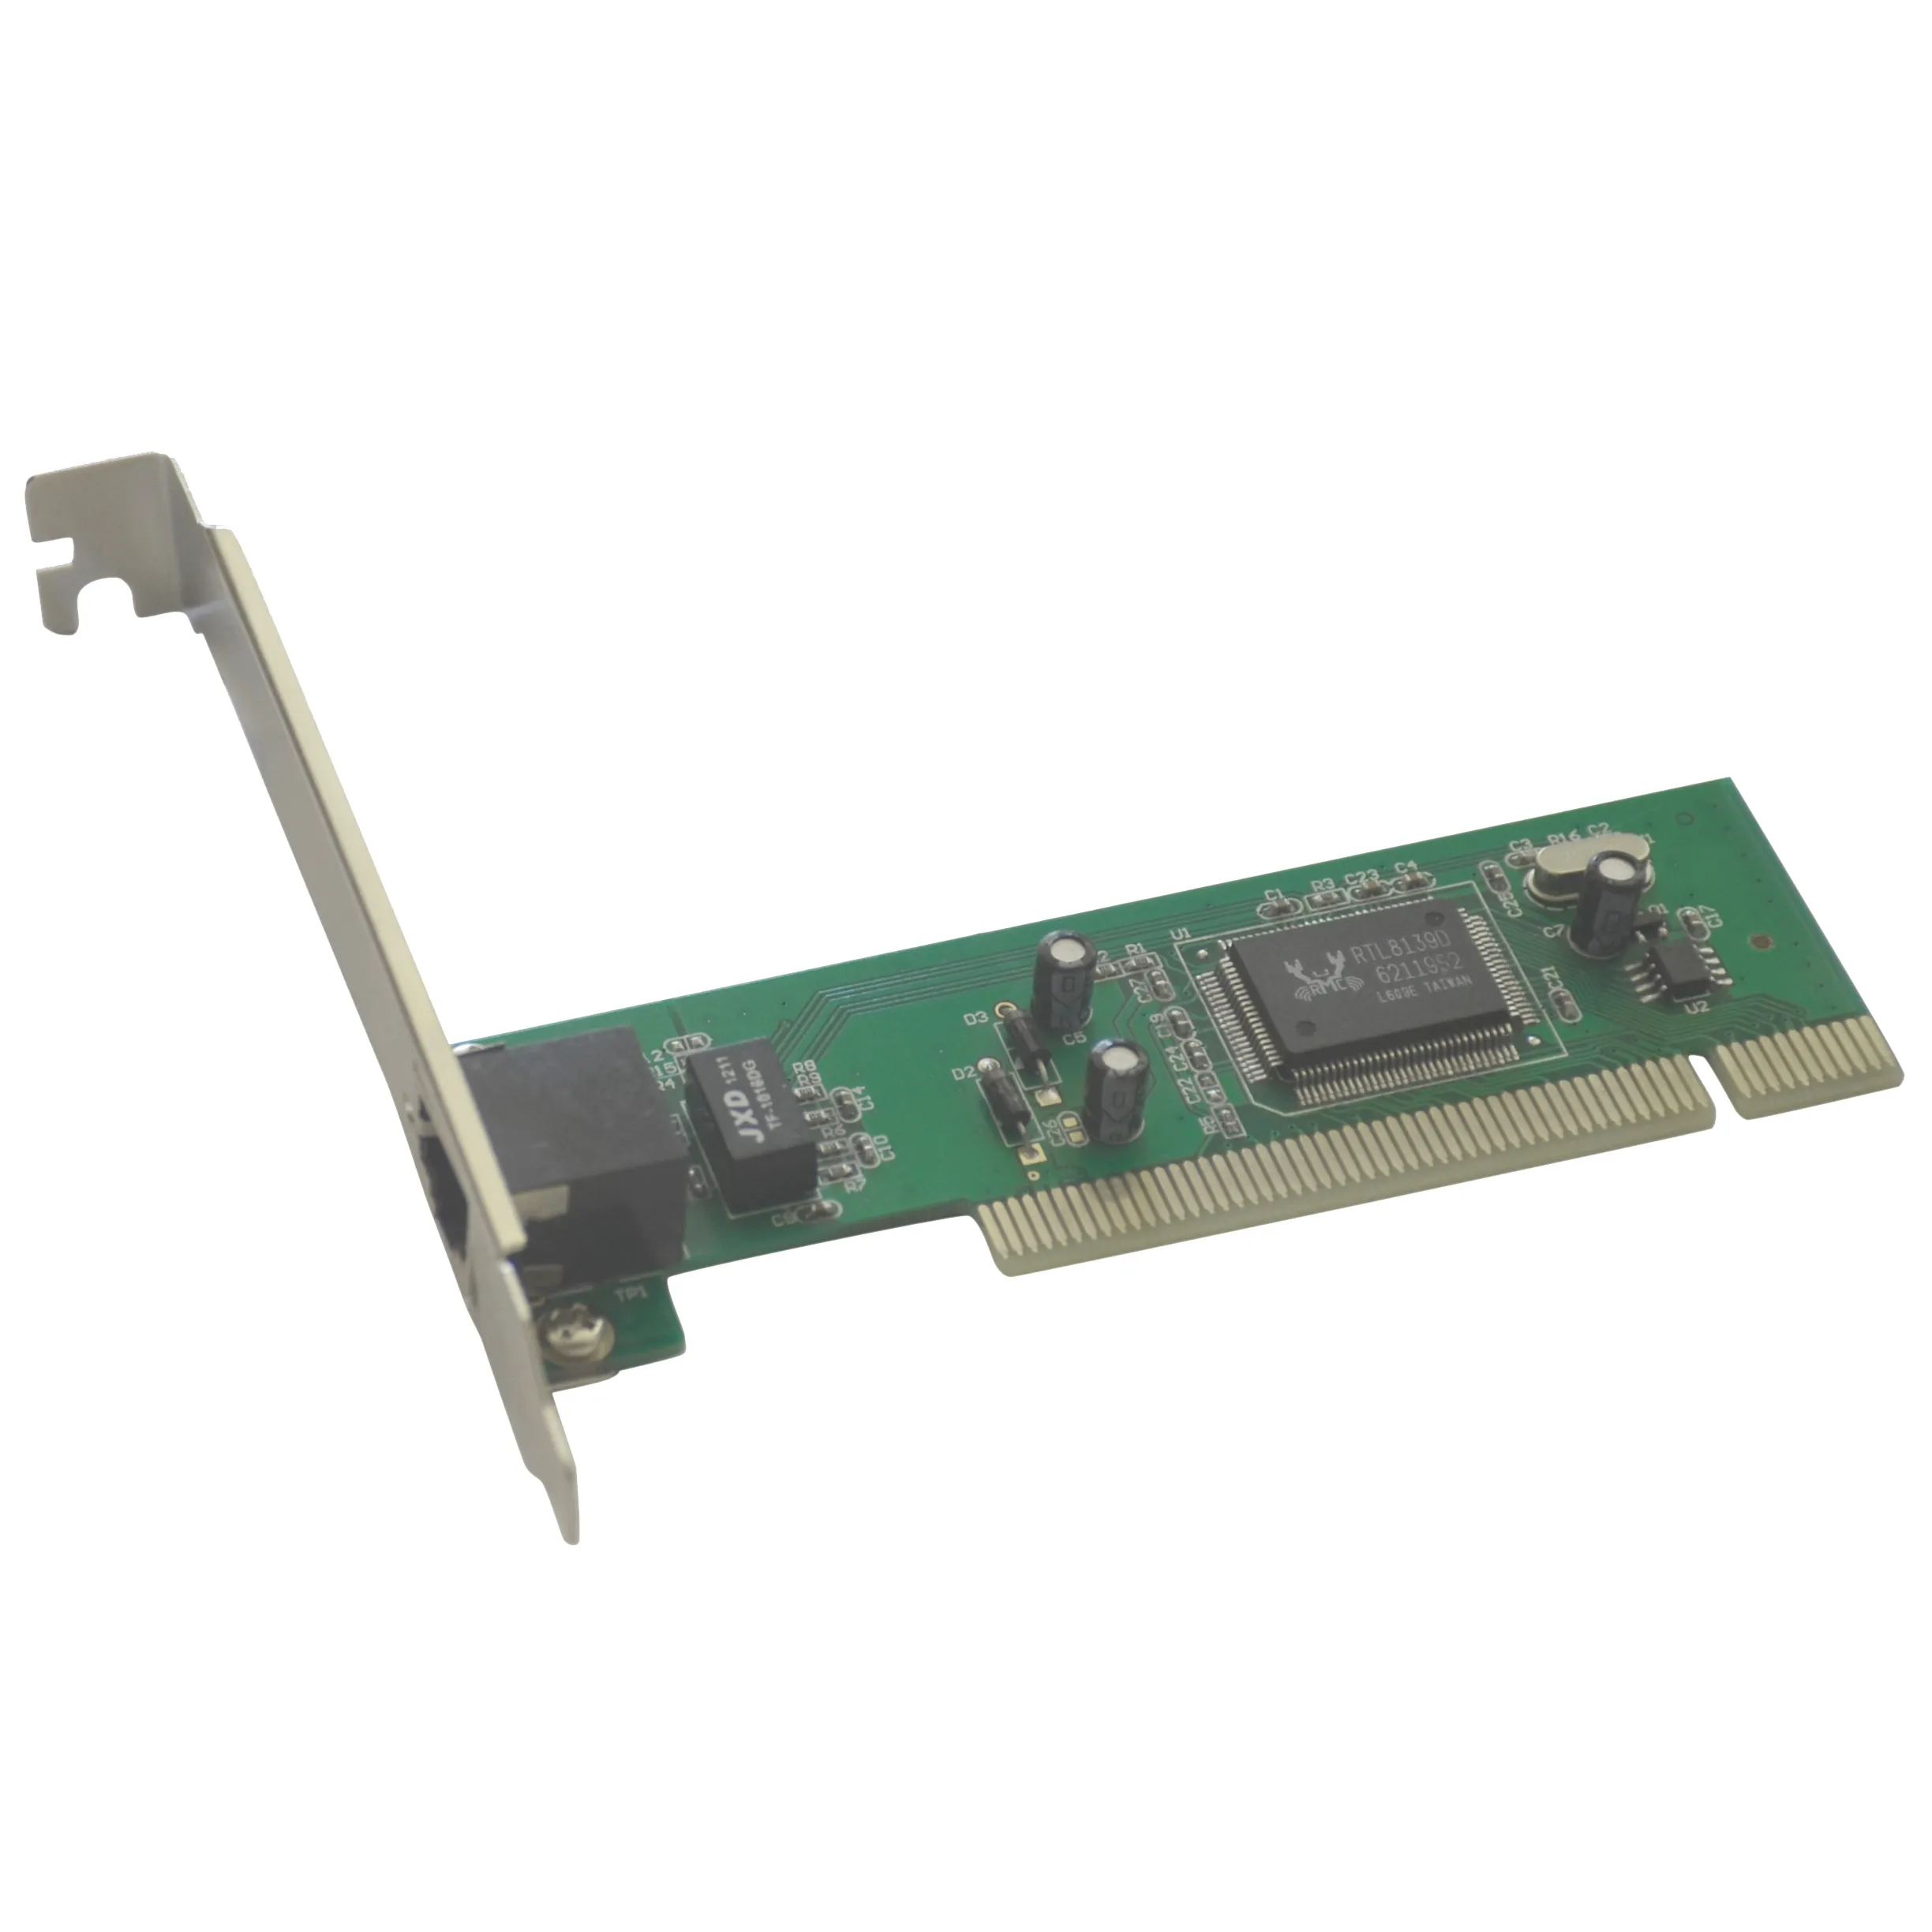 RTL8139D PCI Lan Pxe PC 10/100 Mbps Diskette Kartu Jaringan/Network Adapter